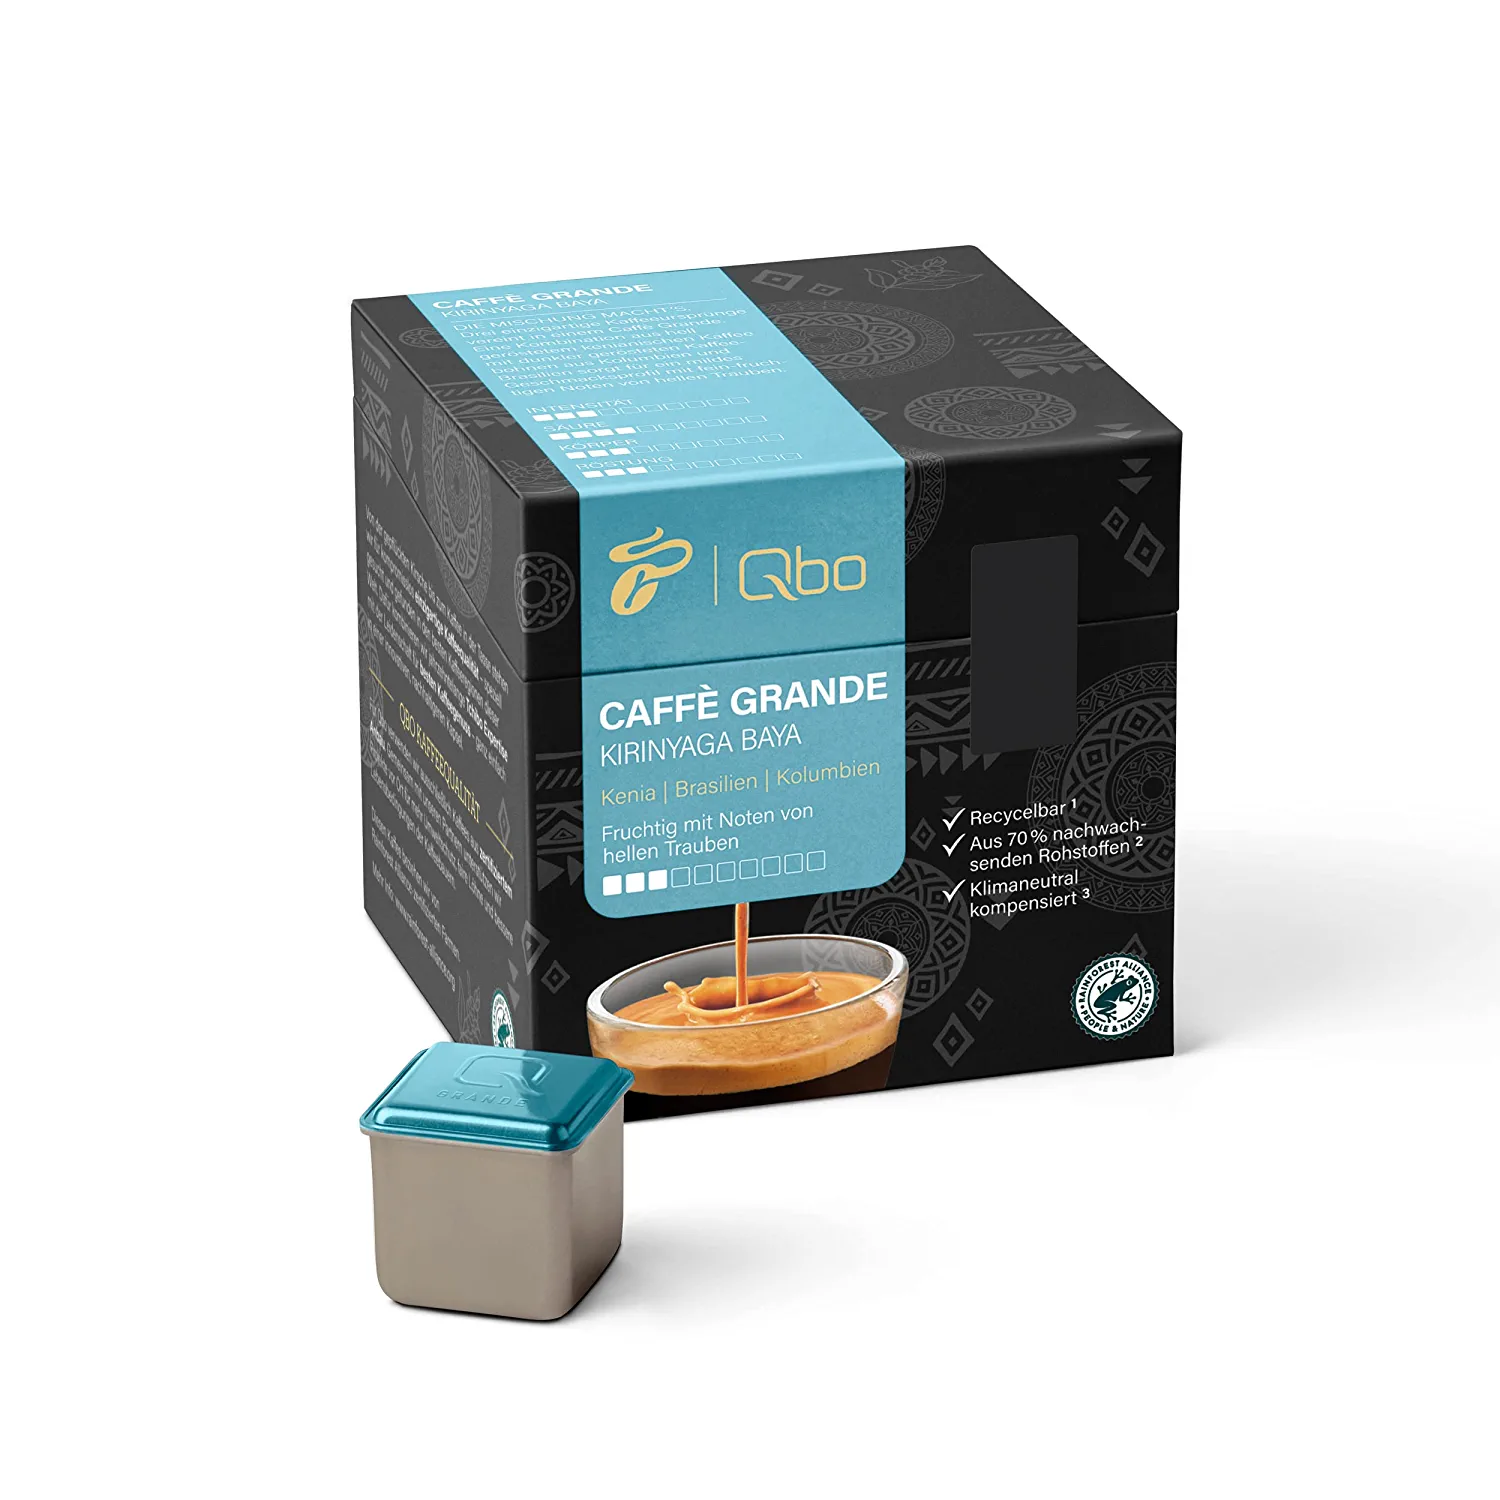 Tchibo Qbo Caffè Grande Kirinyaga Baya Premium Kaffeekapseln, 27 Stück (Caffè Grande, Intensität 3/10, fruchtig), nachhaltig, aus 70% nachwachsenden Rohstoffen & klimaneutral kompensiert